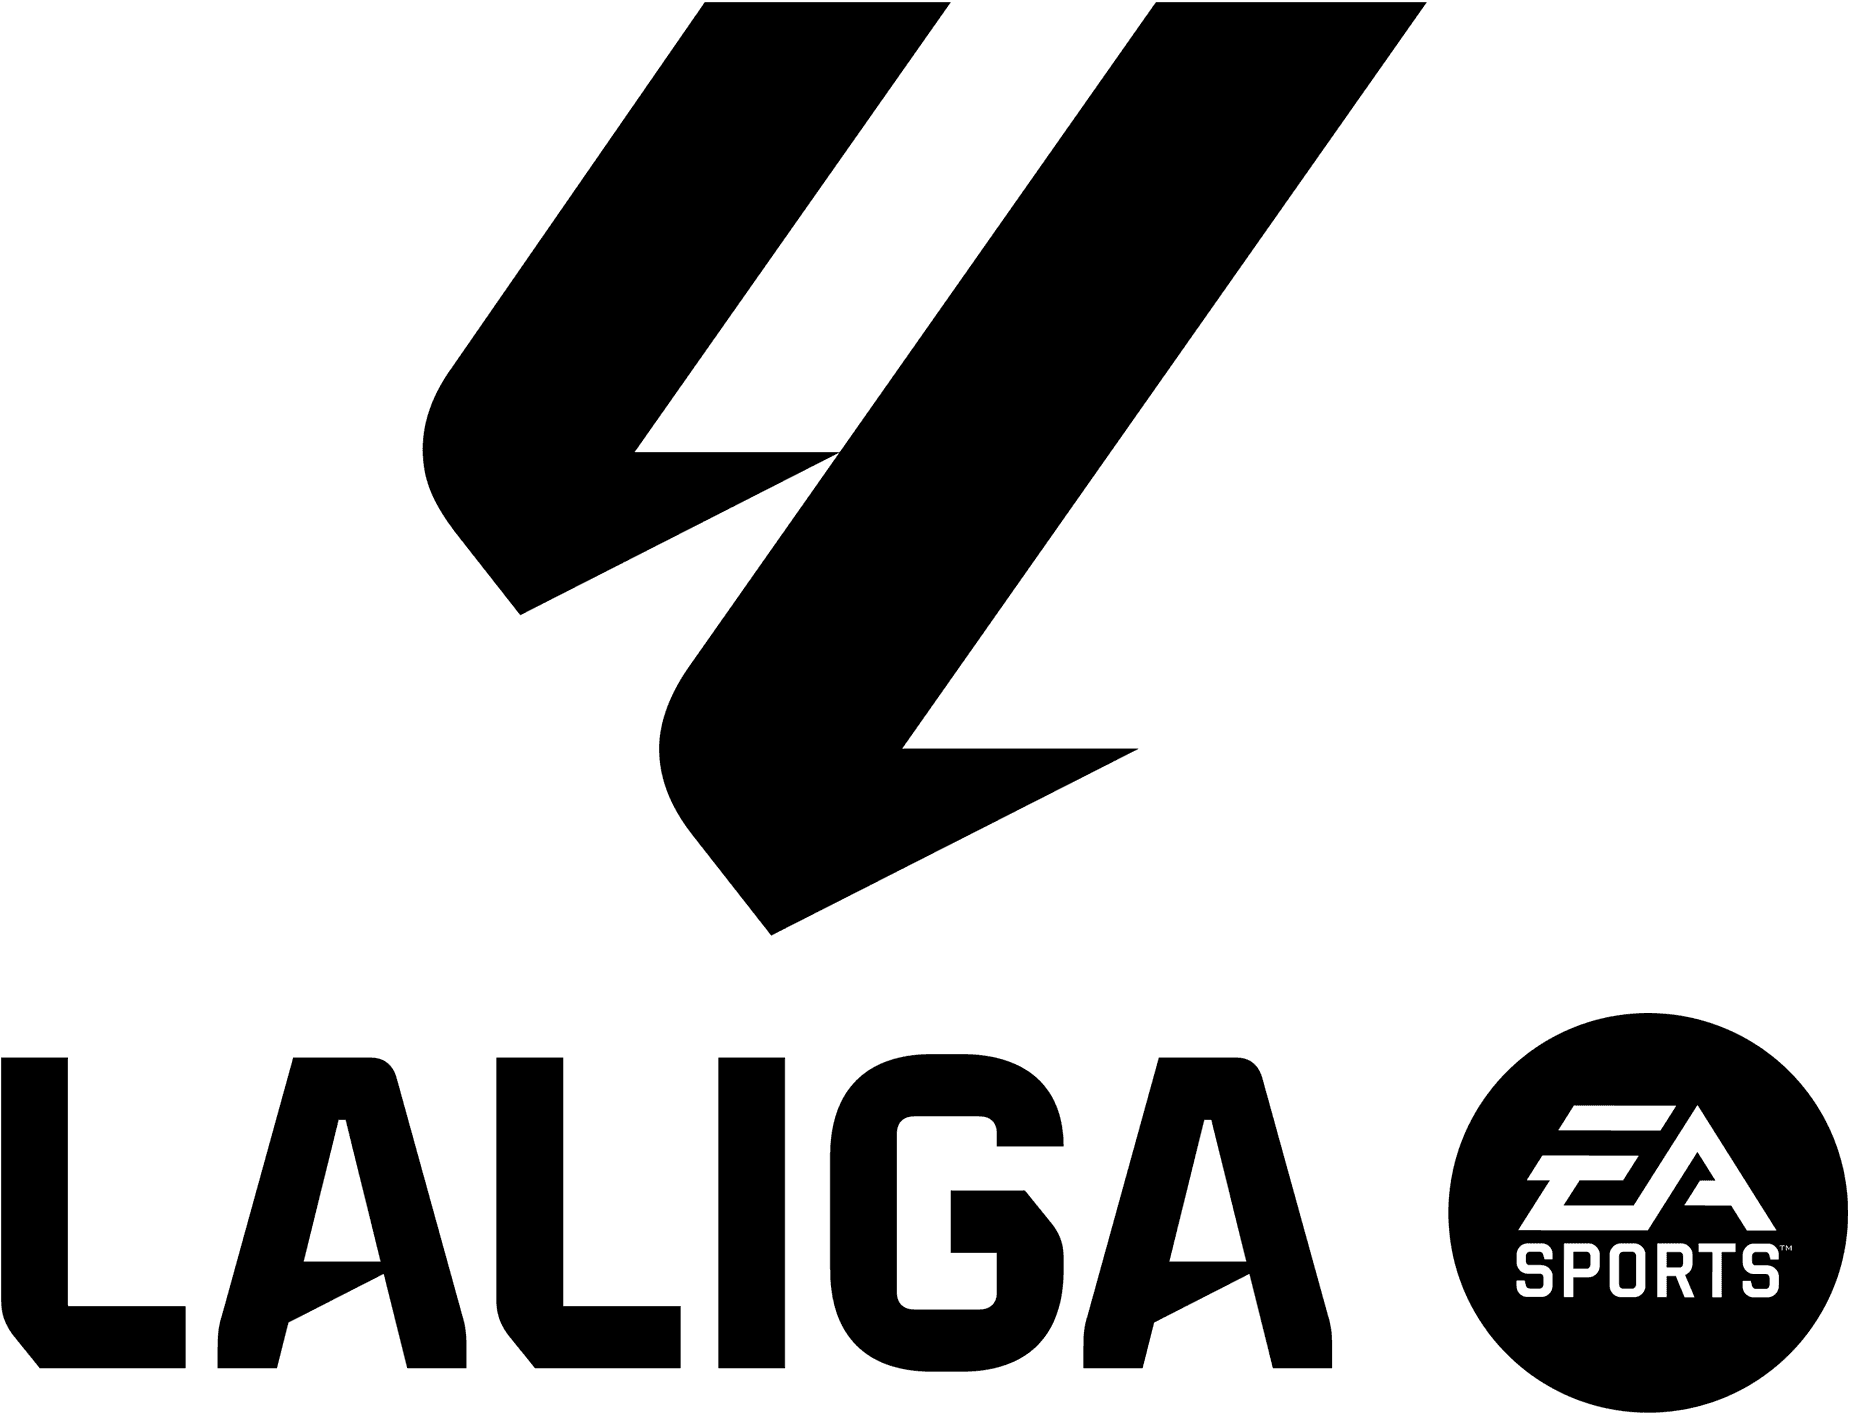 LaLiga Logo - Black